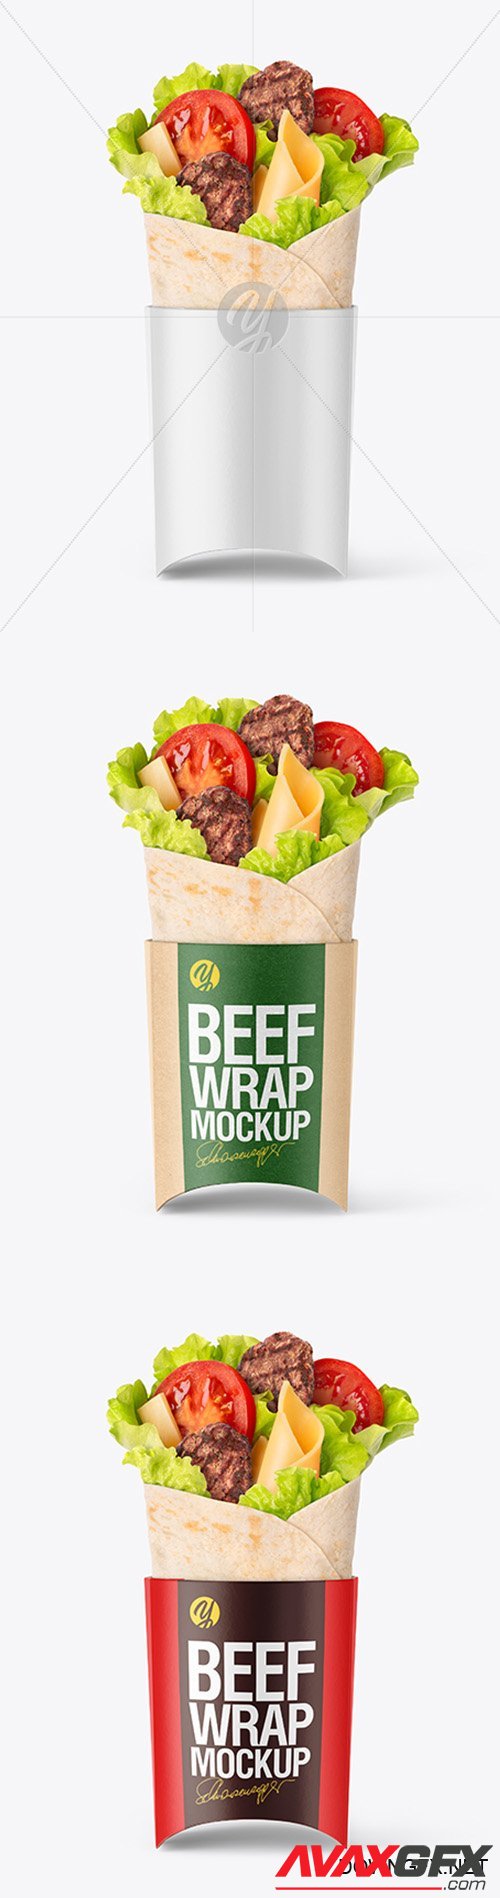 Beef Wrap Mockup 40571